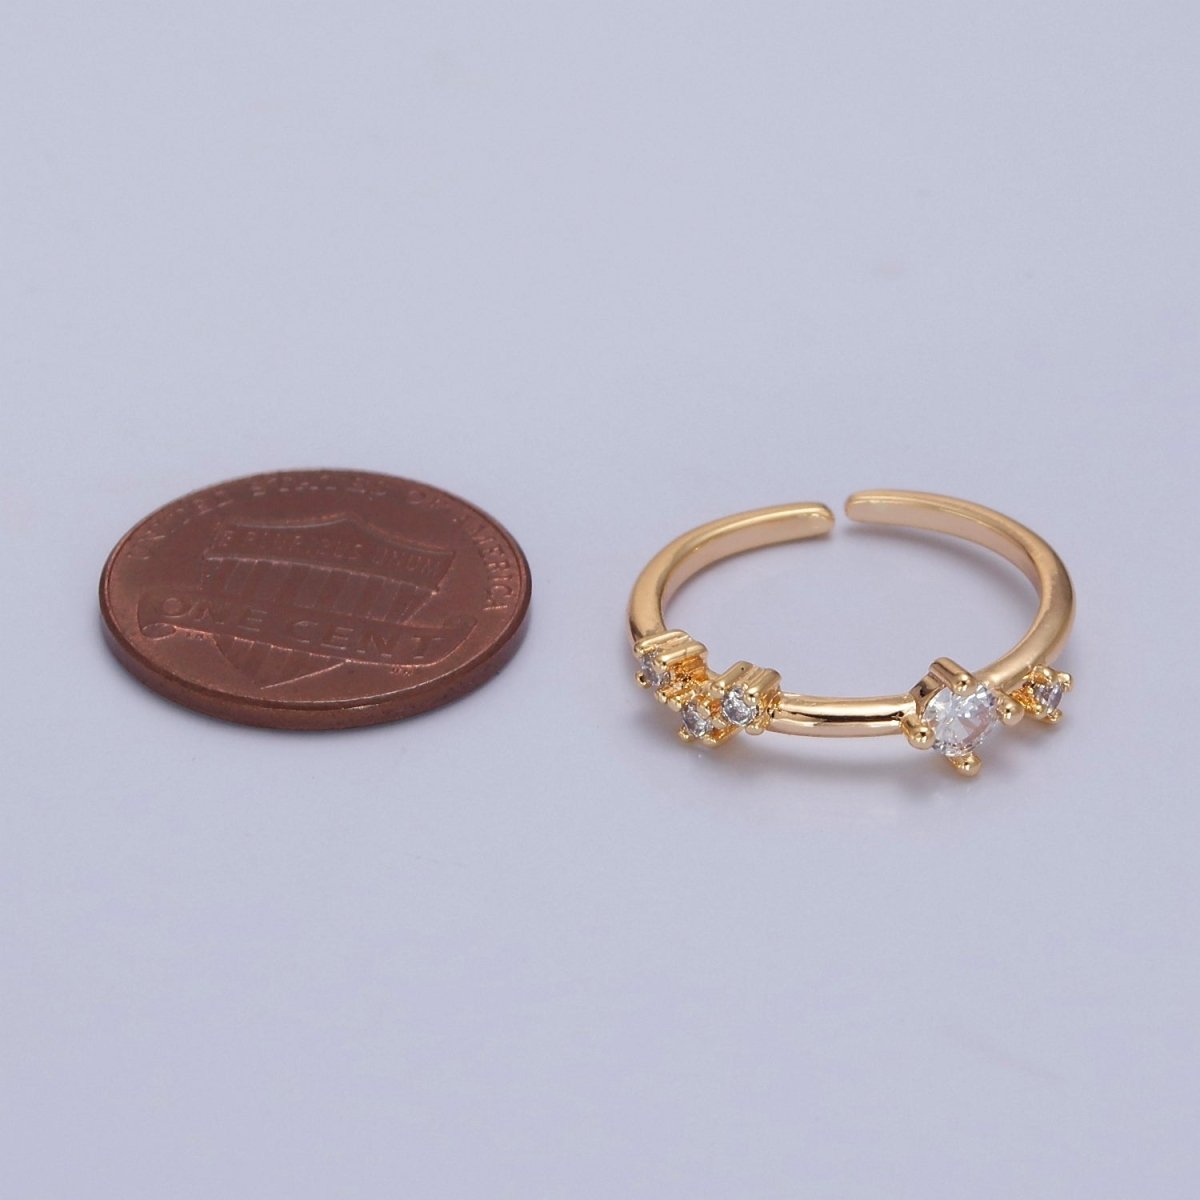 Dainty Multi-Stone Ring • Gold Band Cz Birthstone Ring O-2152~ O-2157 - DLUXCA